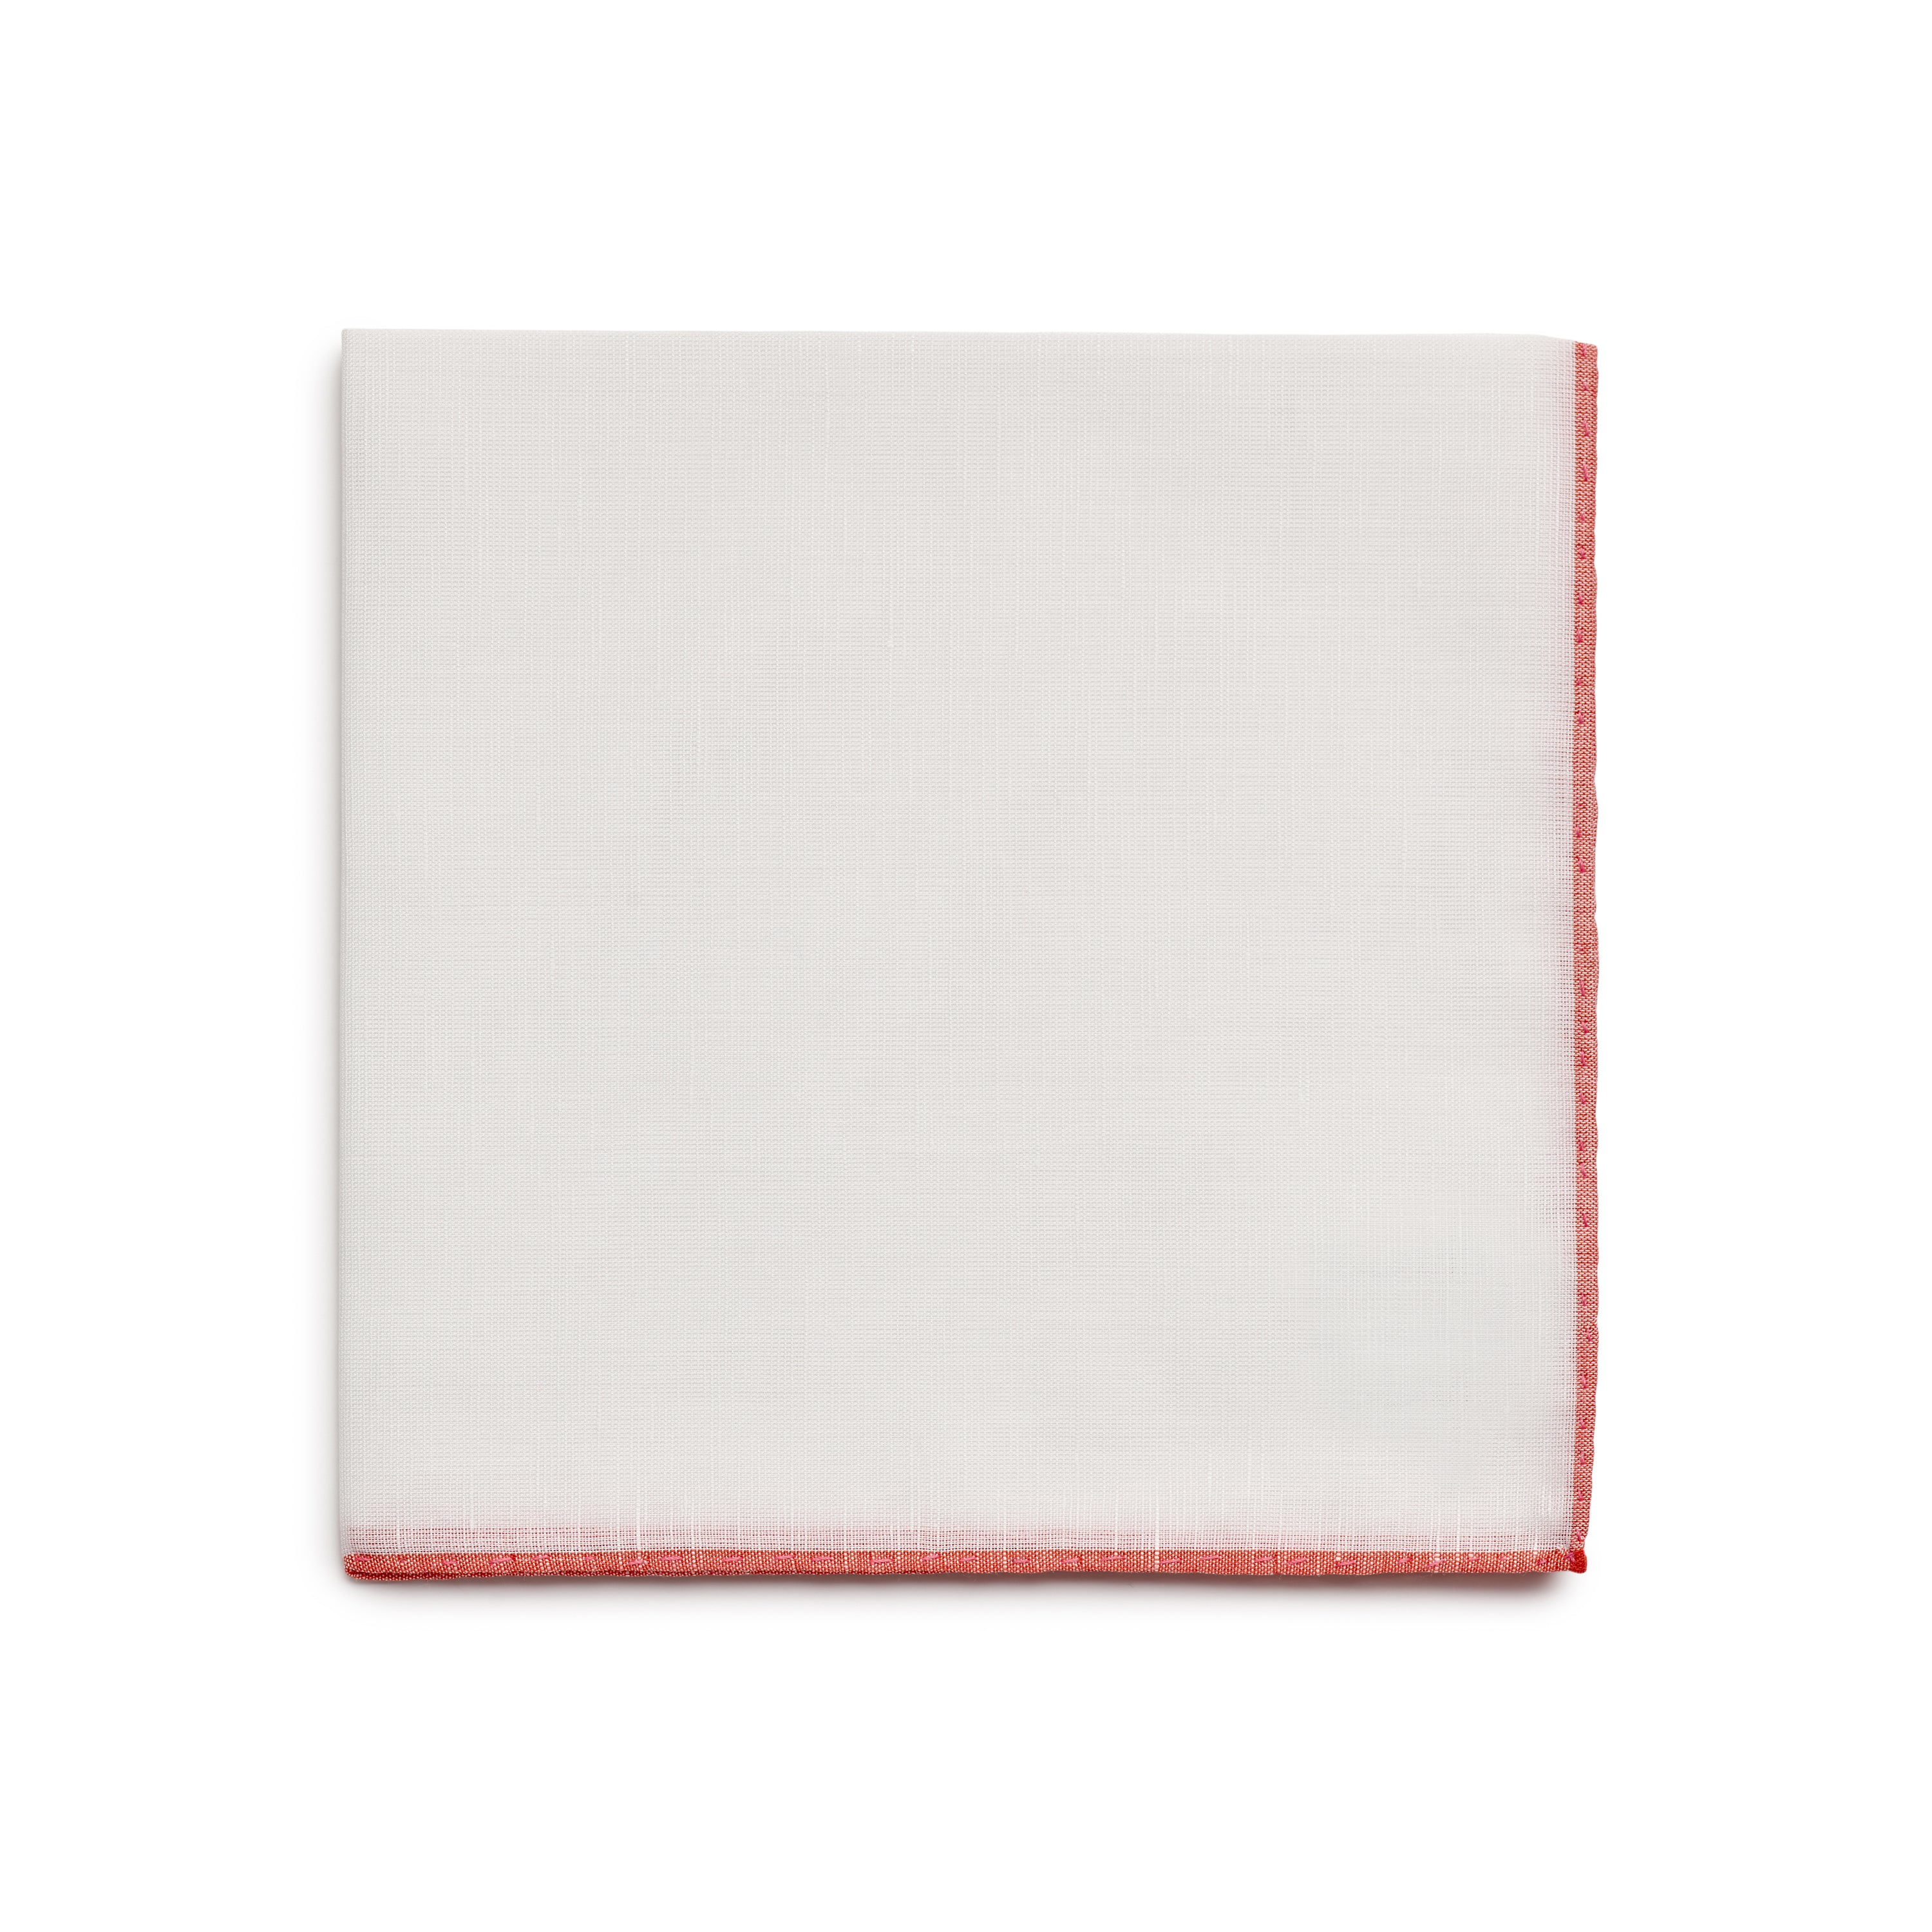 Simonnot Godard Pocket Square in White with Red Border Folded